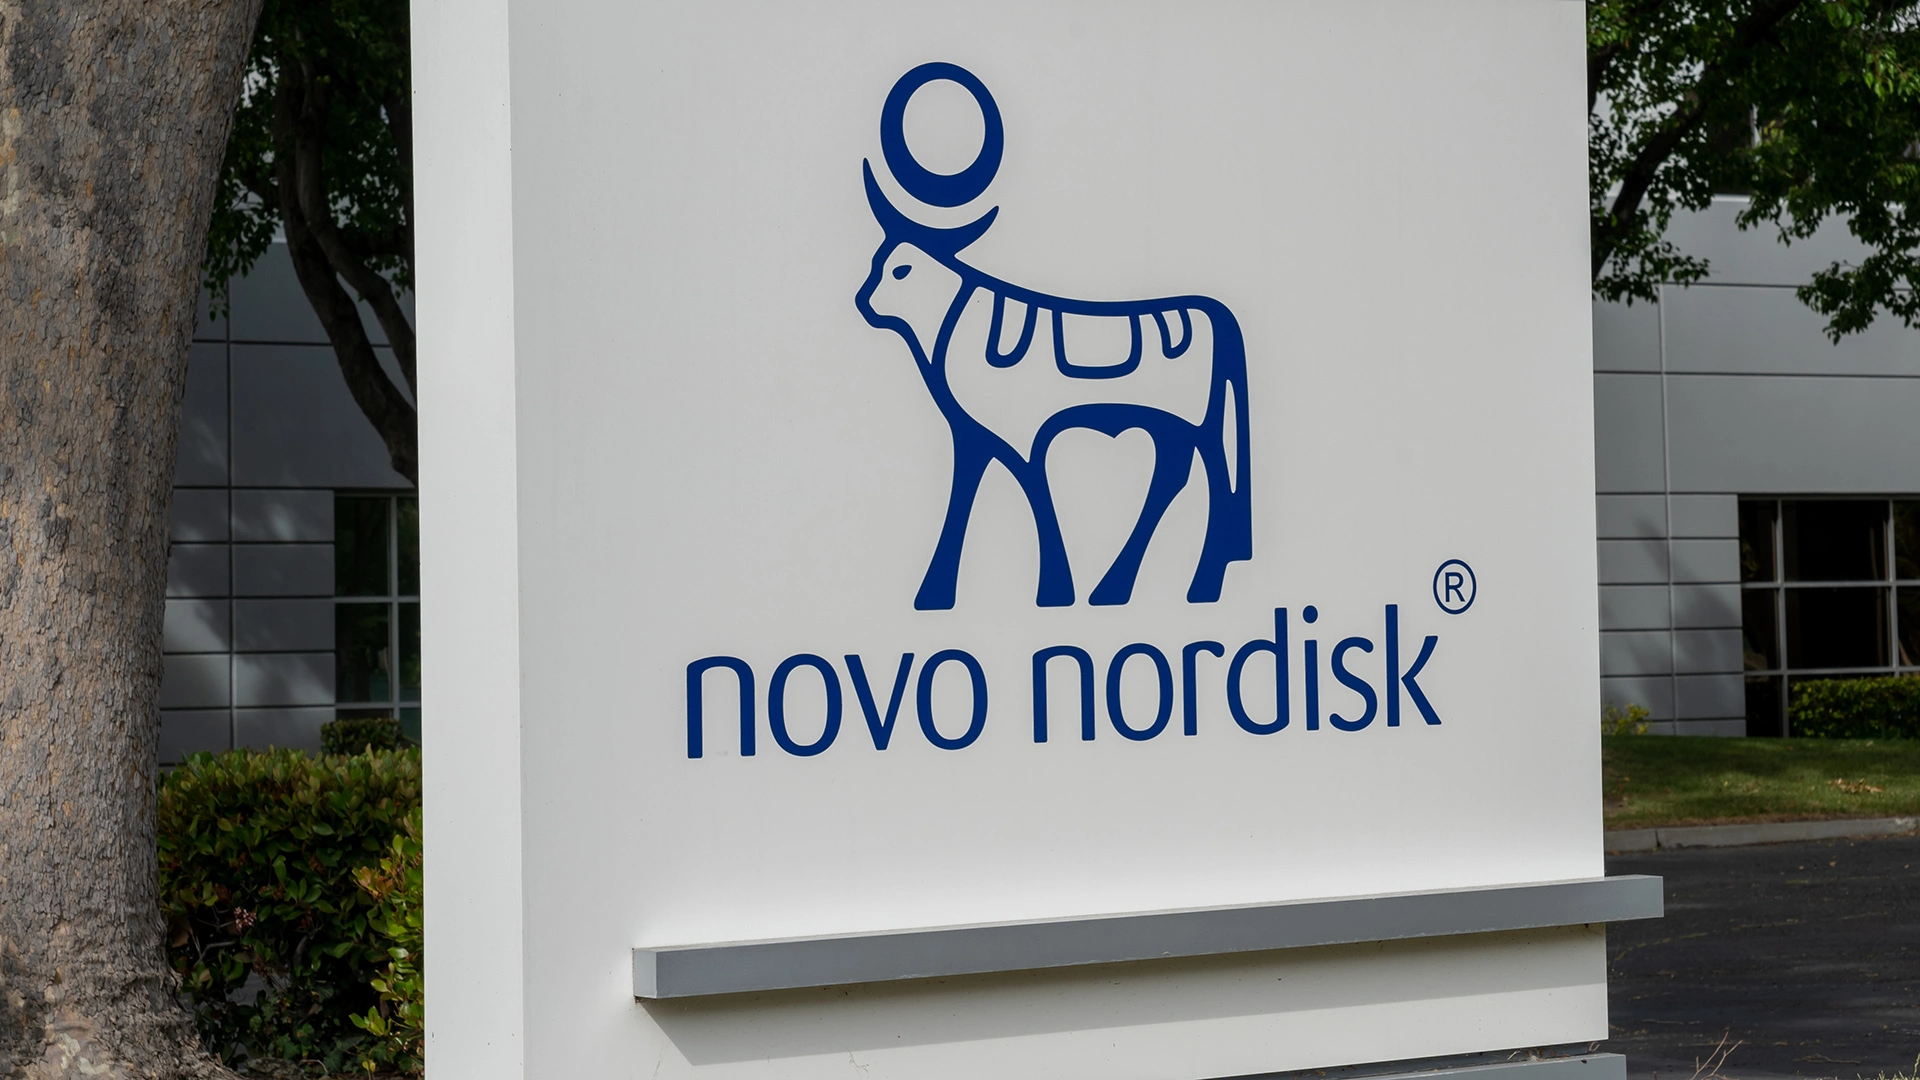 Immer noch ein Pflichtkauf? Deswegen könnte die Rallye bei der Novo Nordisk-Aktie weitergehen (Foto: JHVEPhoto/Shutterstock)